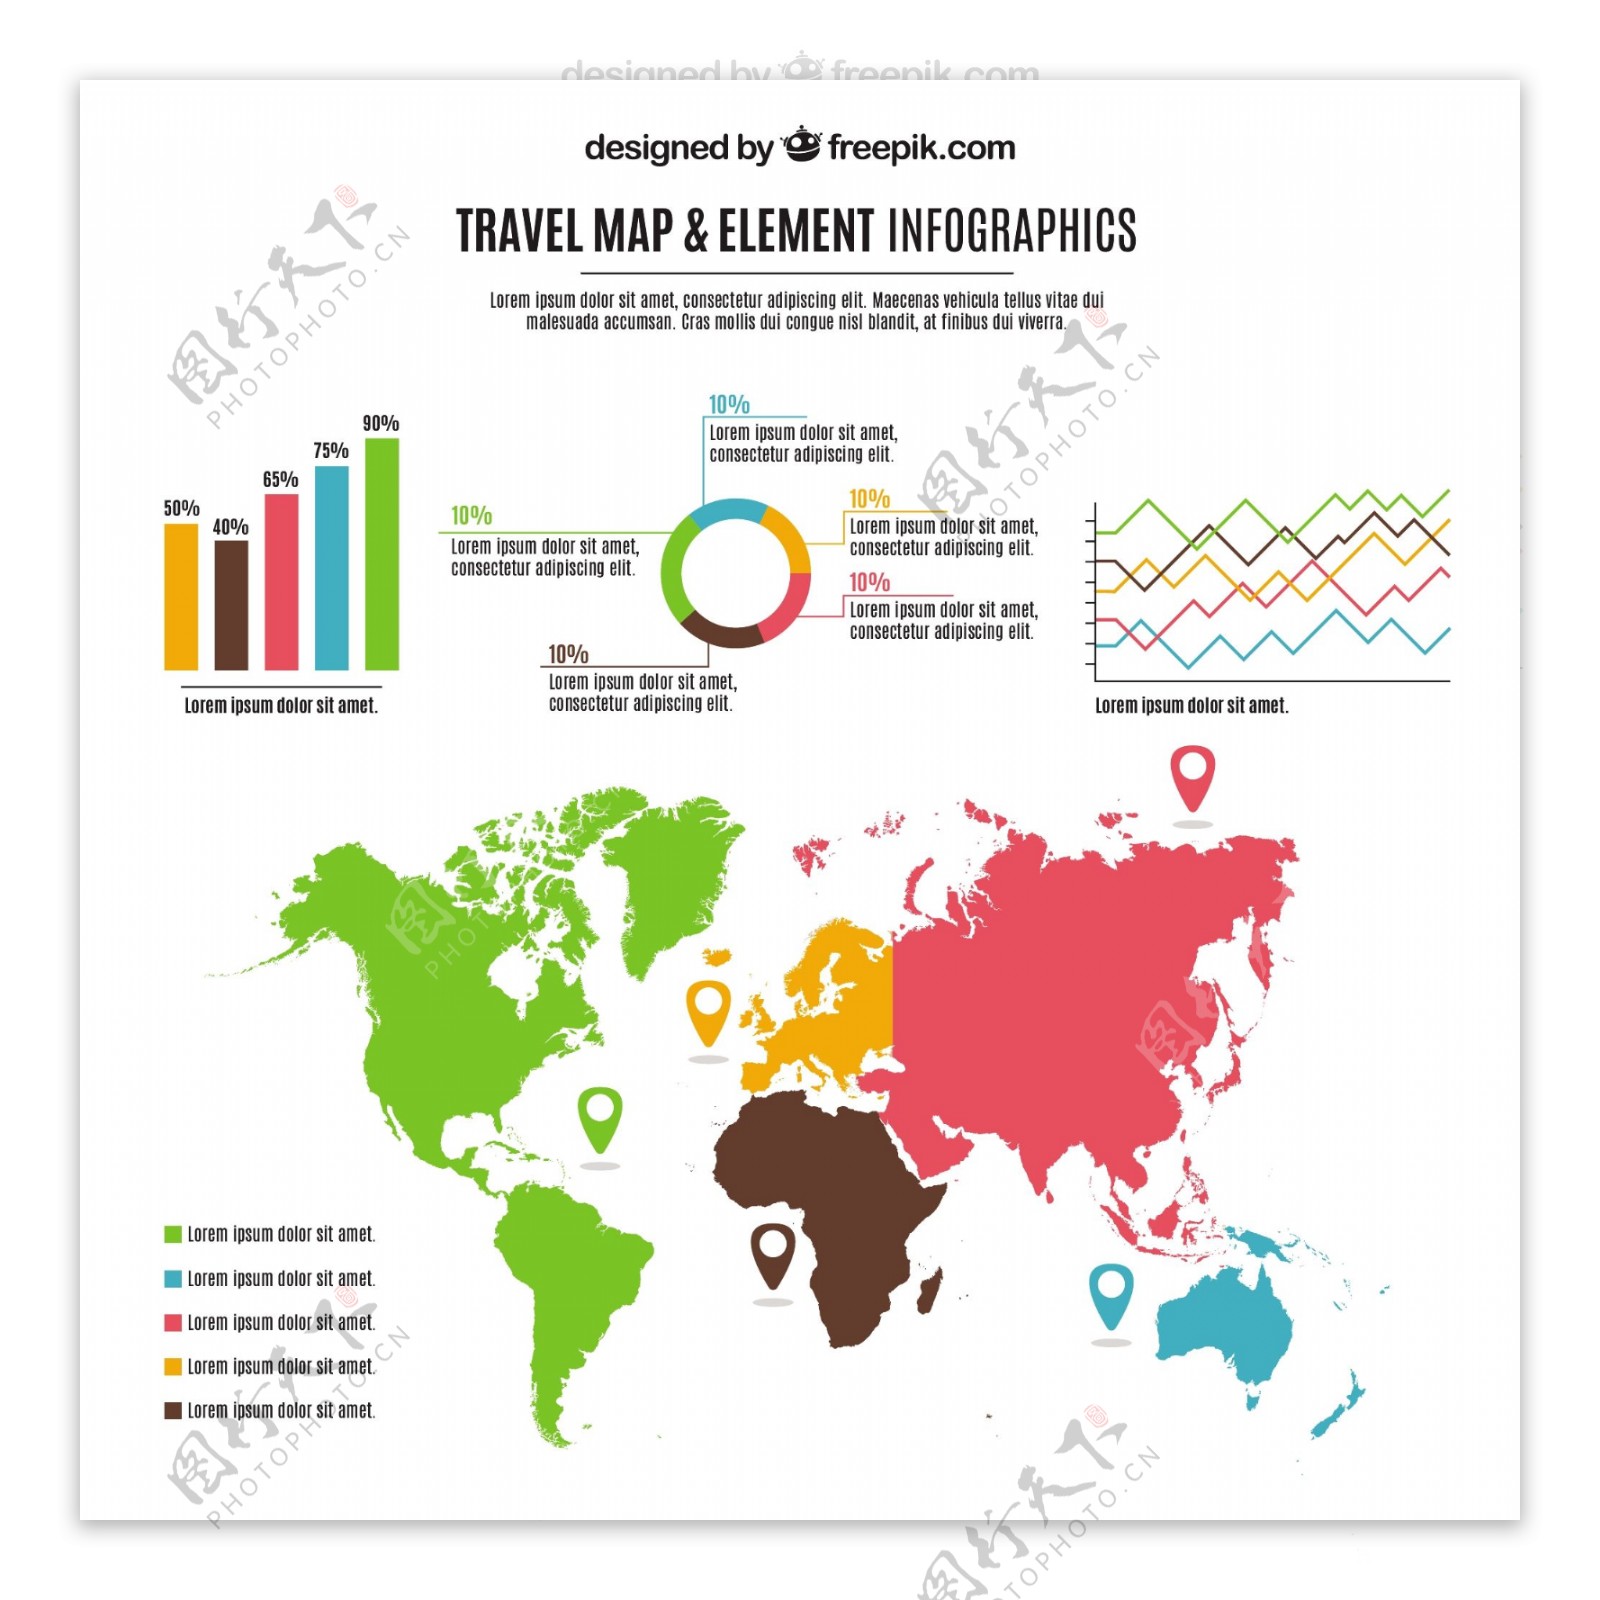 旅游信息图表用彩色地图